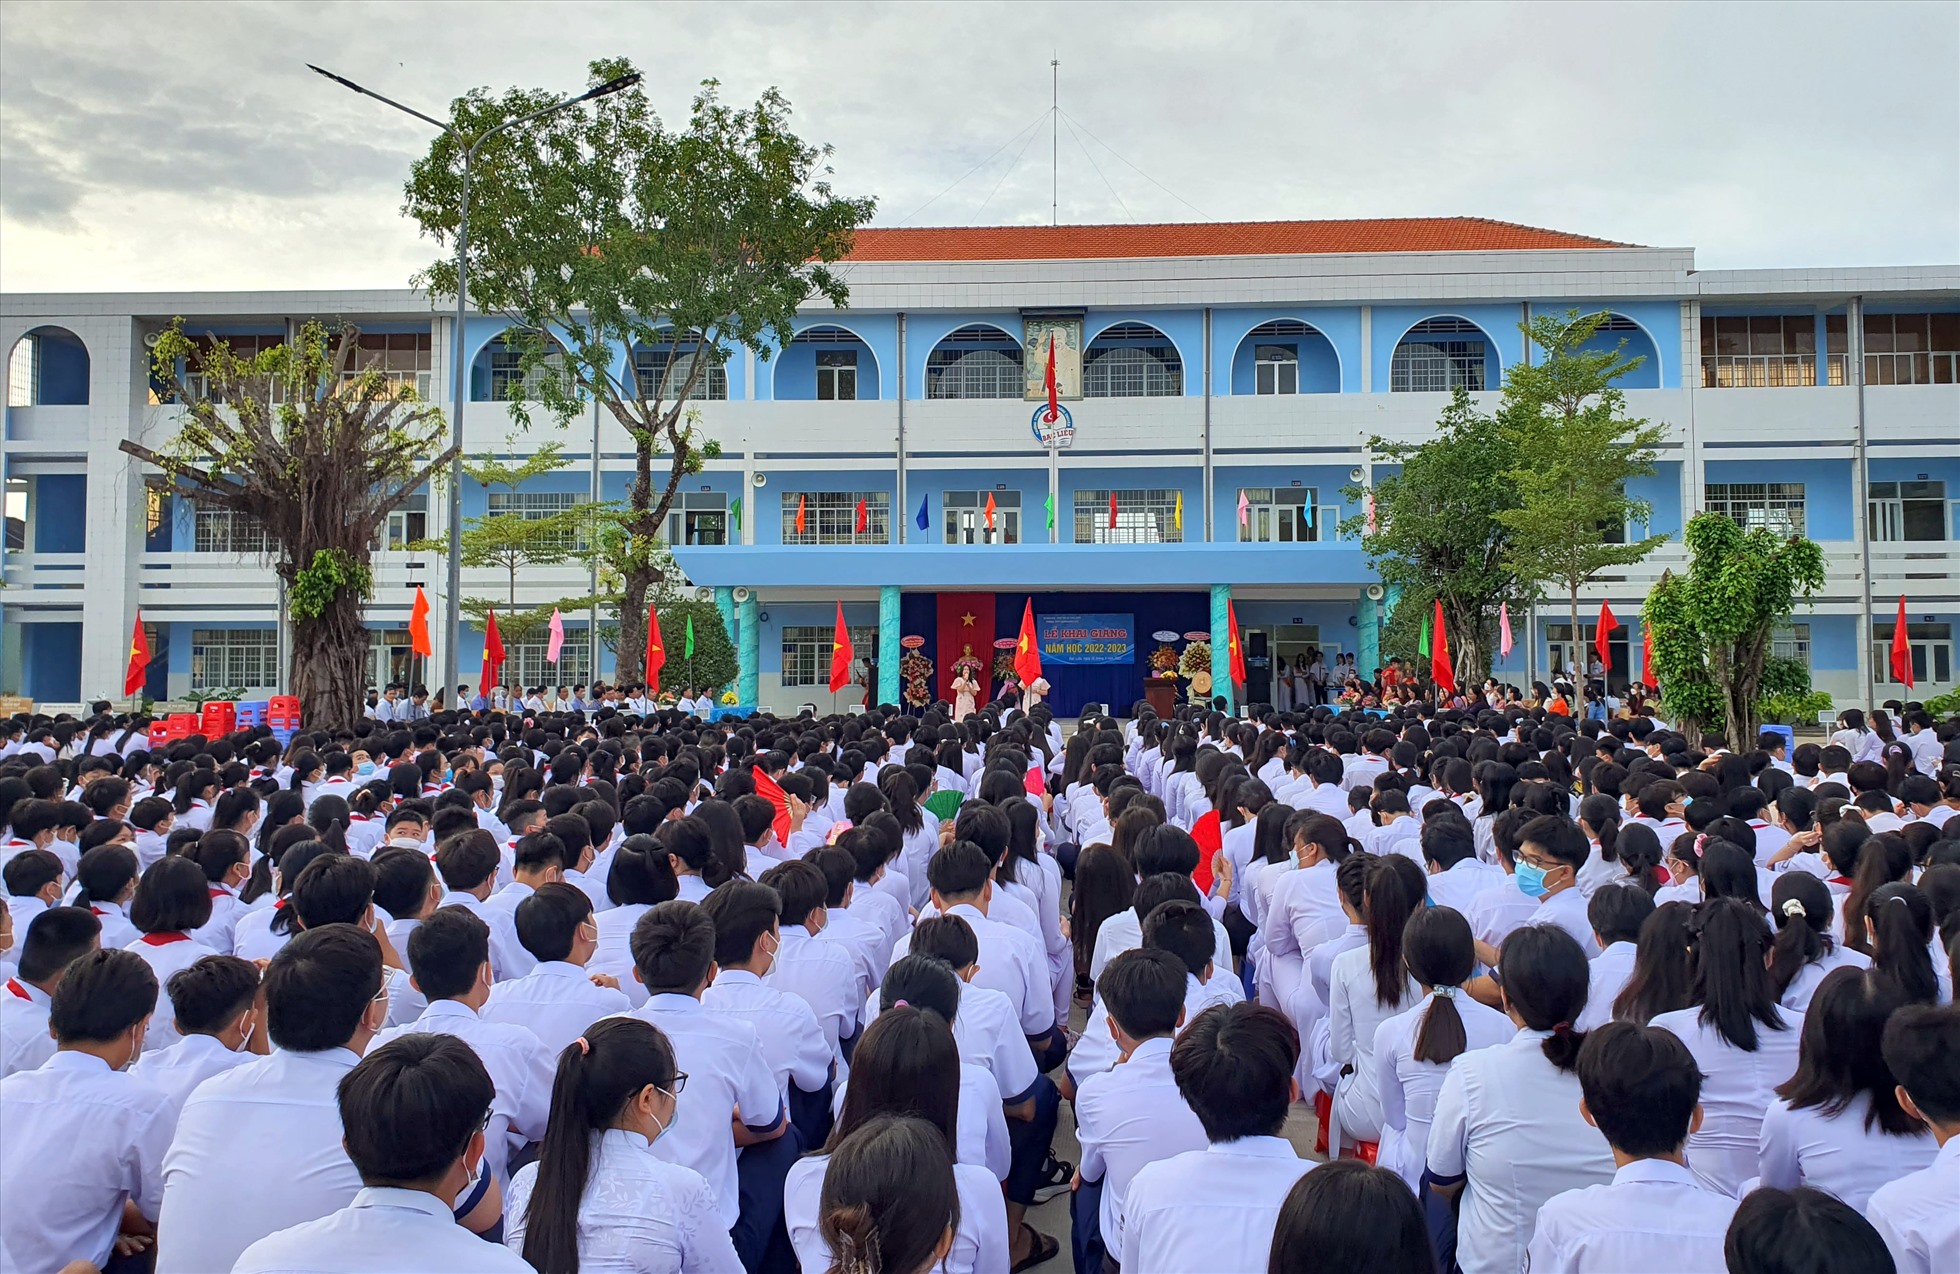 Vào năn học mới tỉnh Bạc Liêu mới cho tuyển gần 100 biên chế vào vụ trí giảng dạy. Ảnh: Nhật Hồ